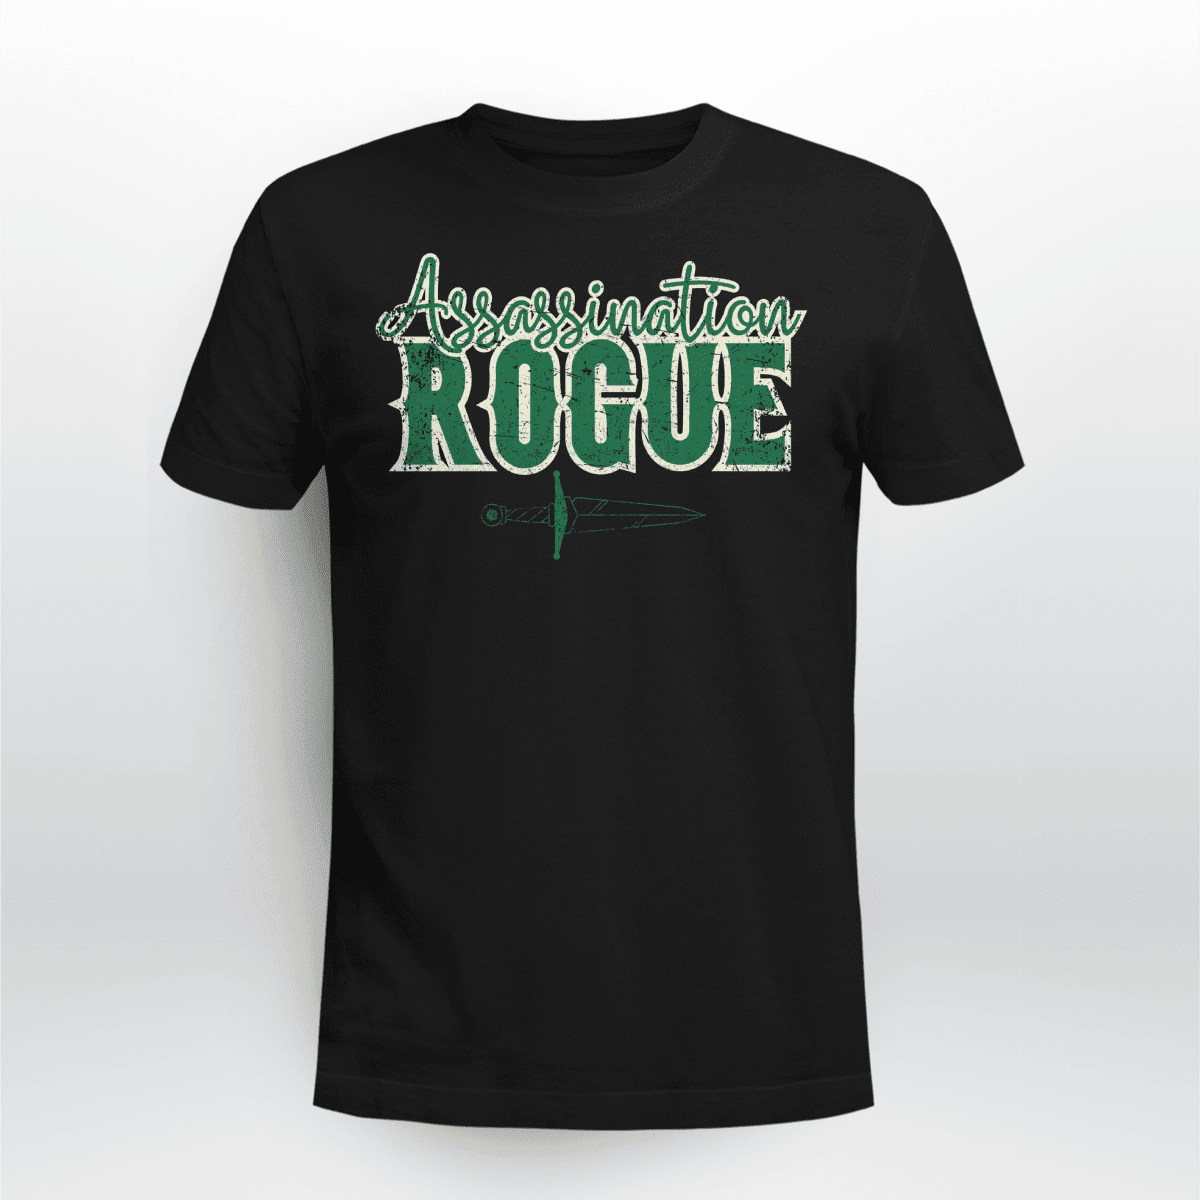 Assassination Rogue Shirt